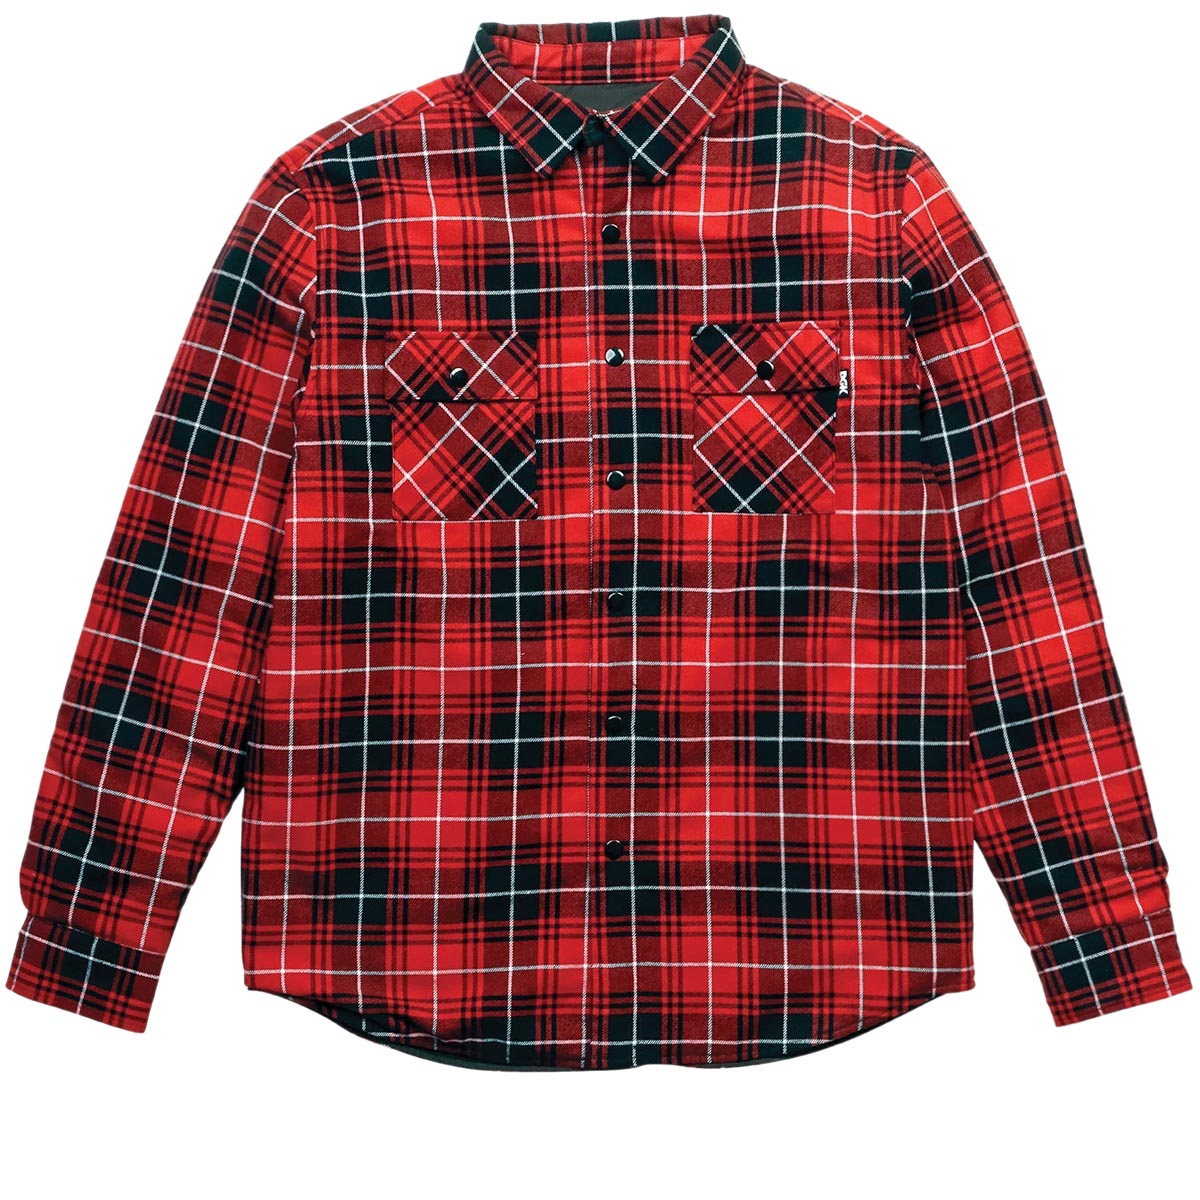 DGK Muerte Flannel Shacket Jacket - Red image 1